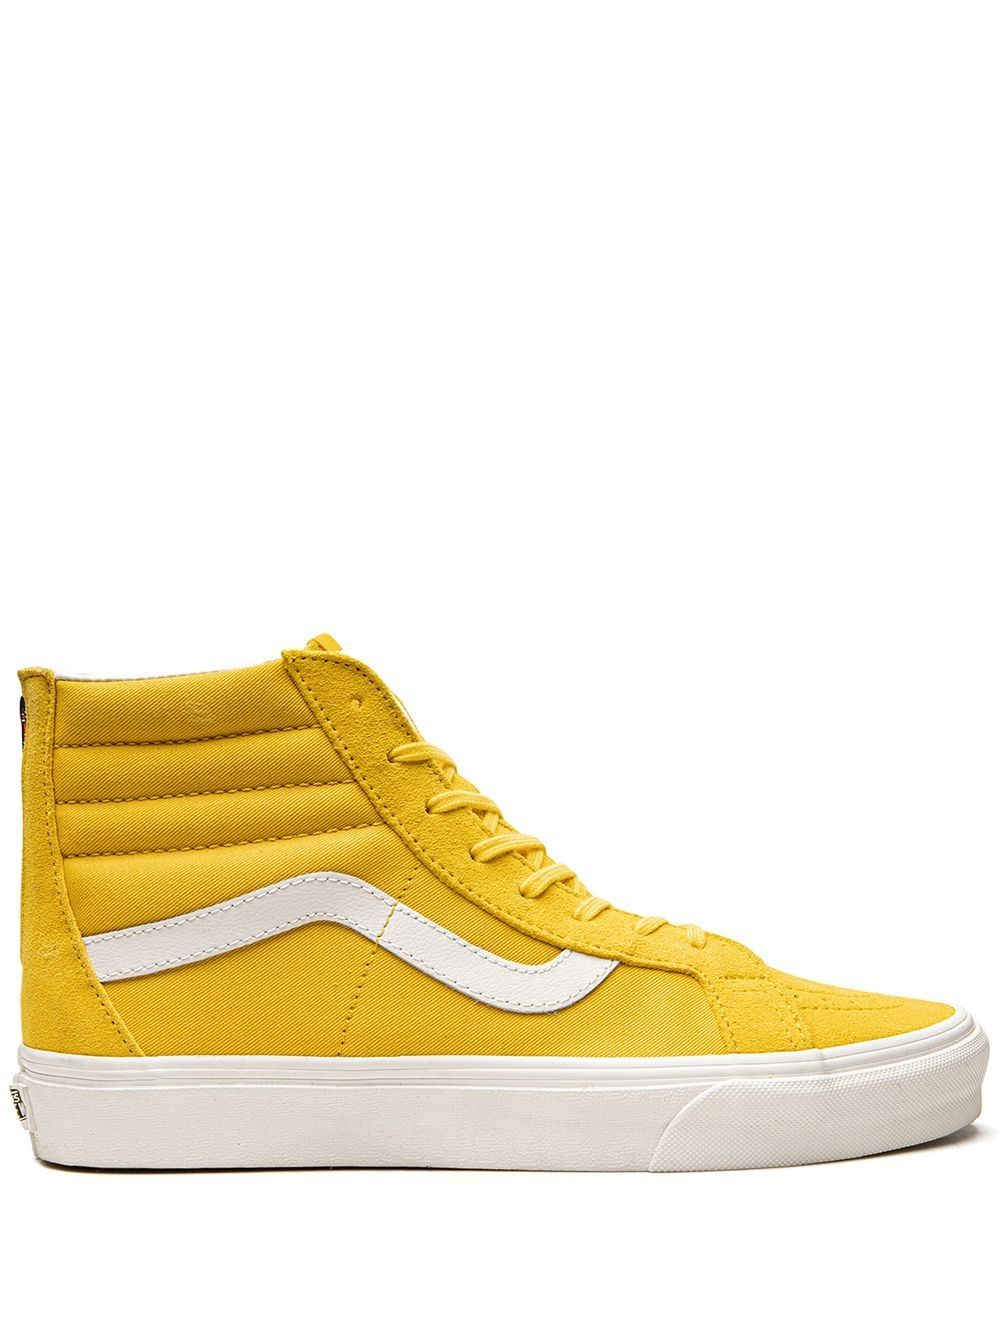 Shop Vans Sk8-hi Reissue Sneakers In Yellow